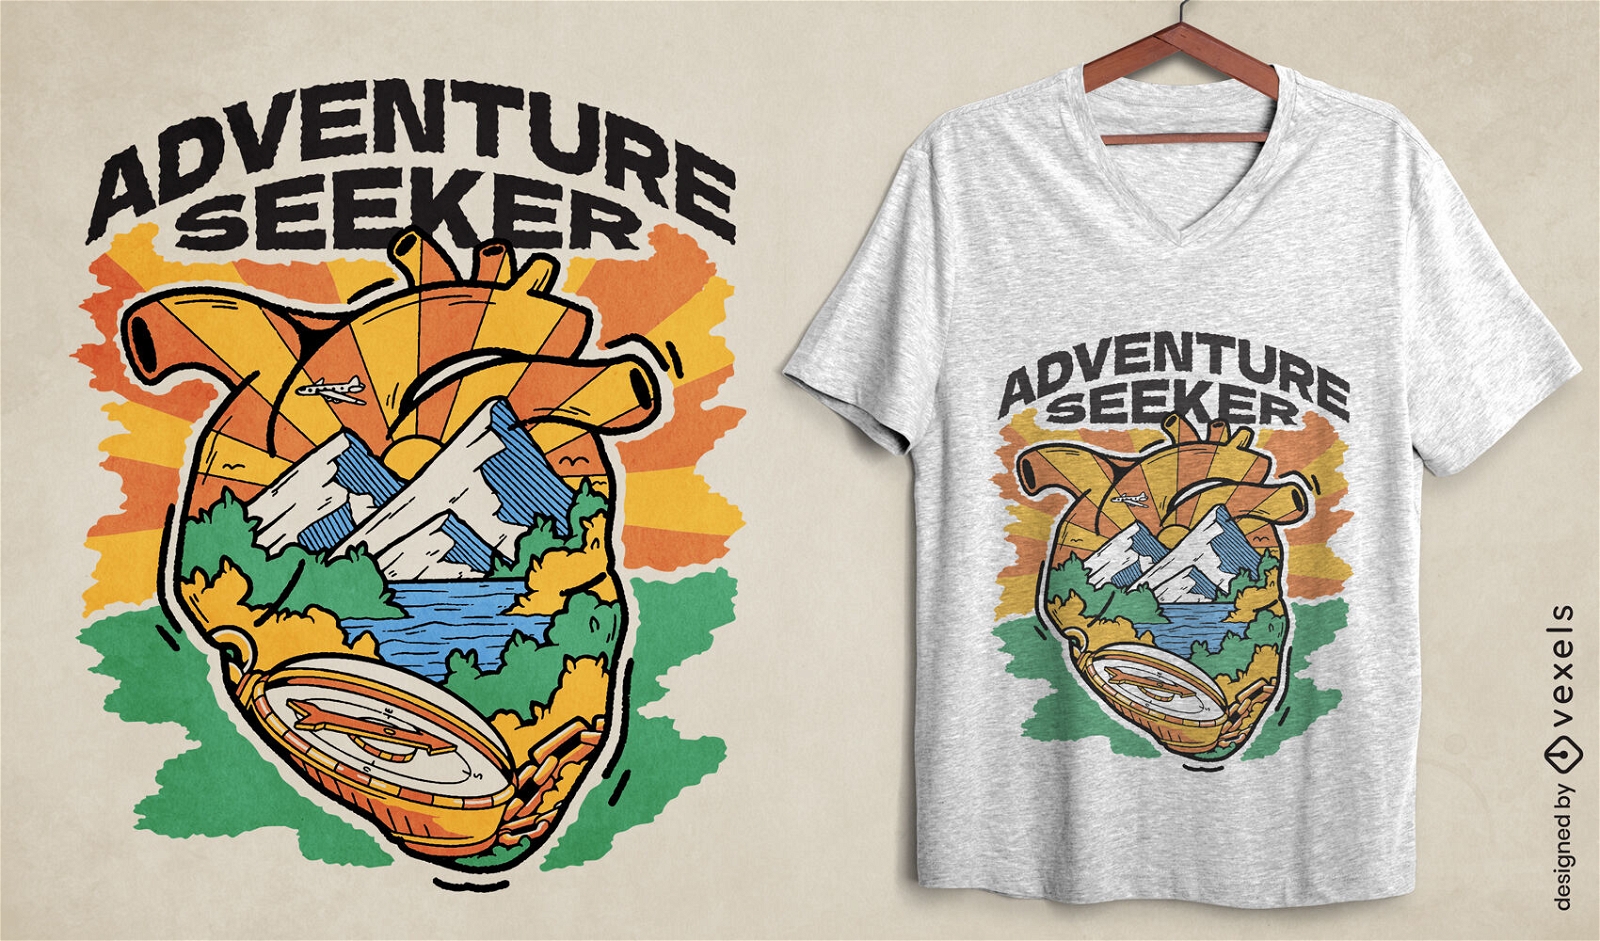 Adventure seeker t-shirt design